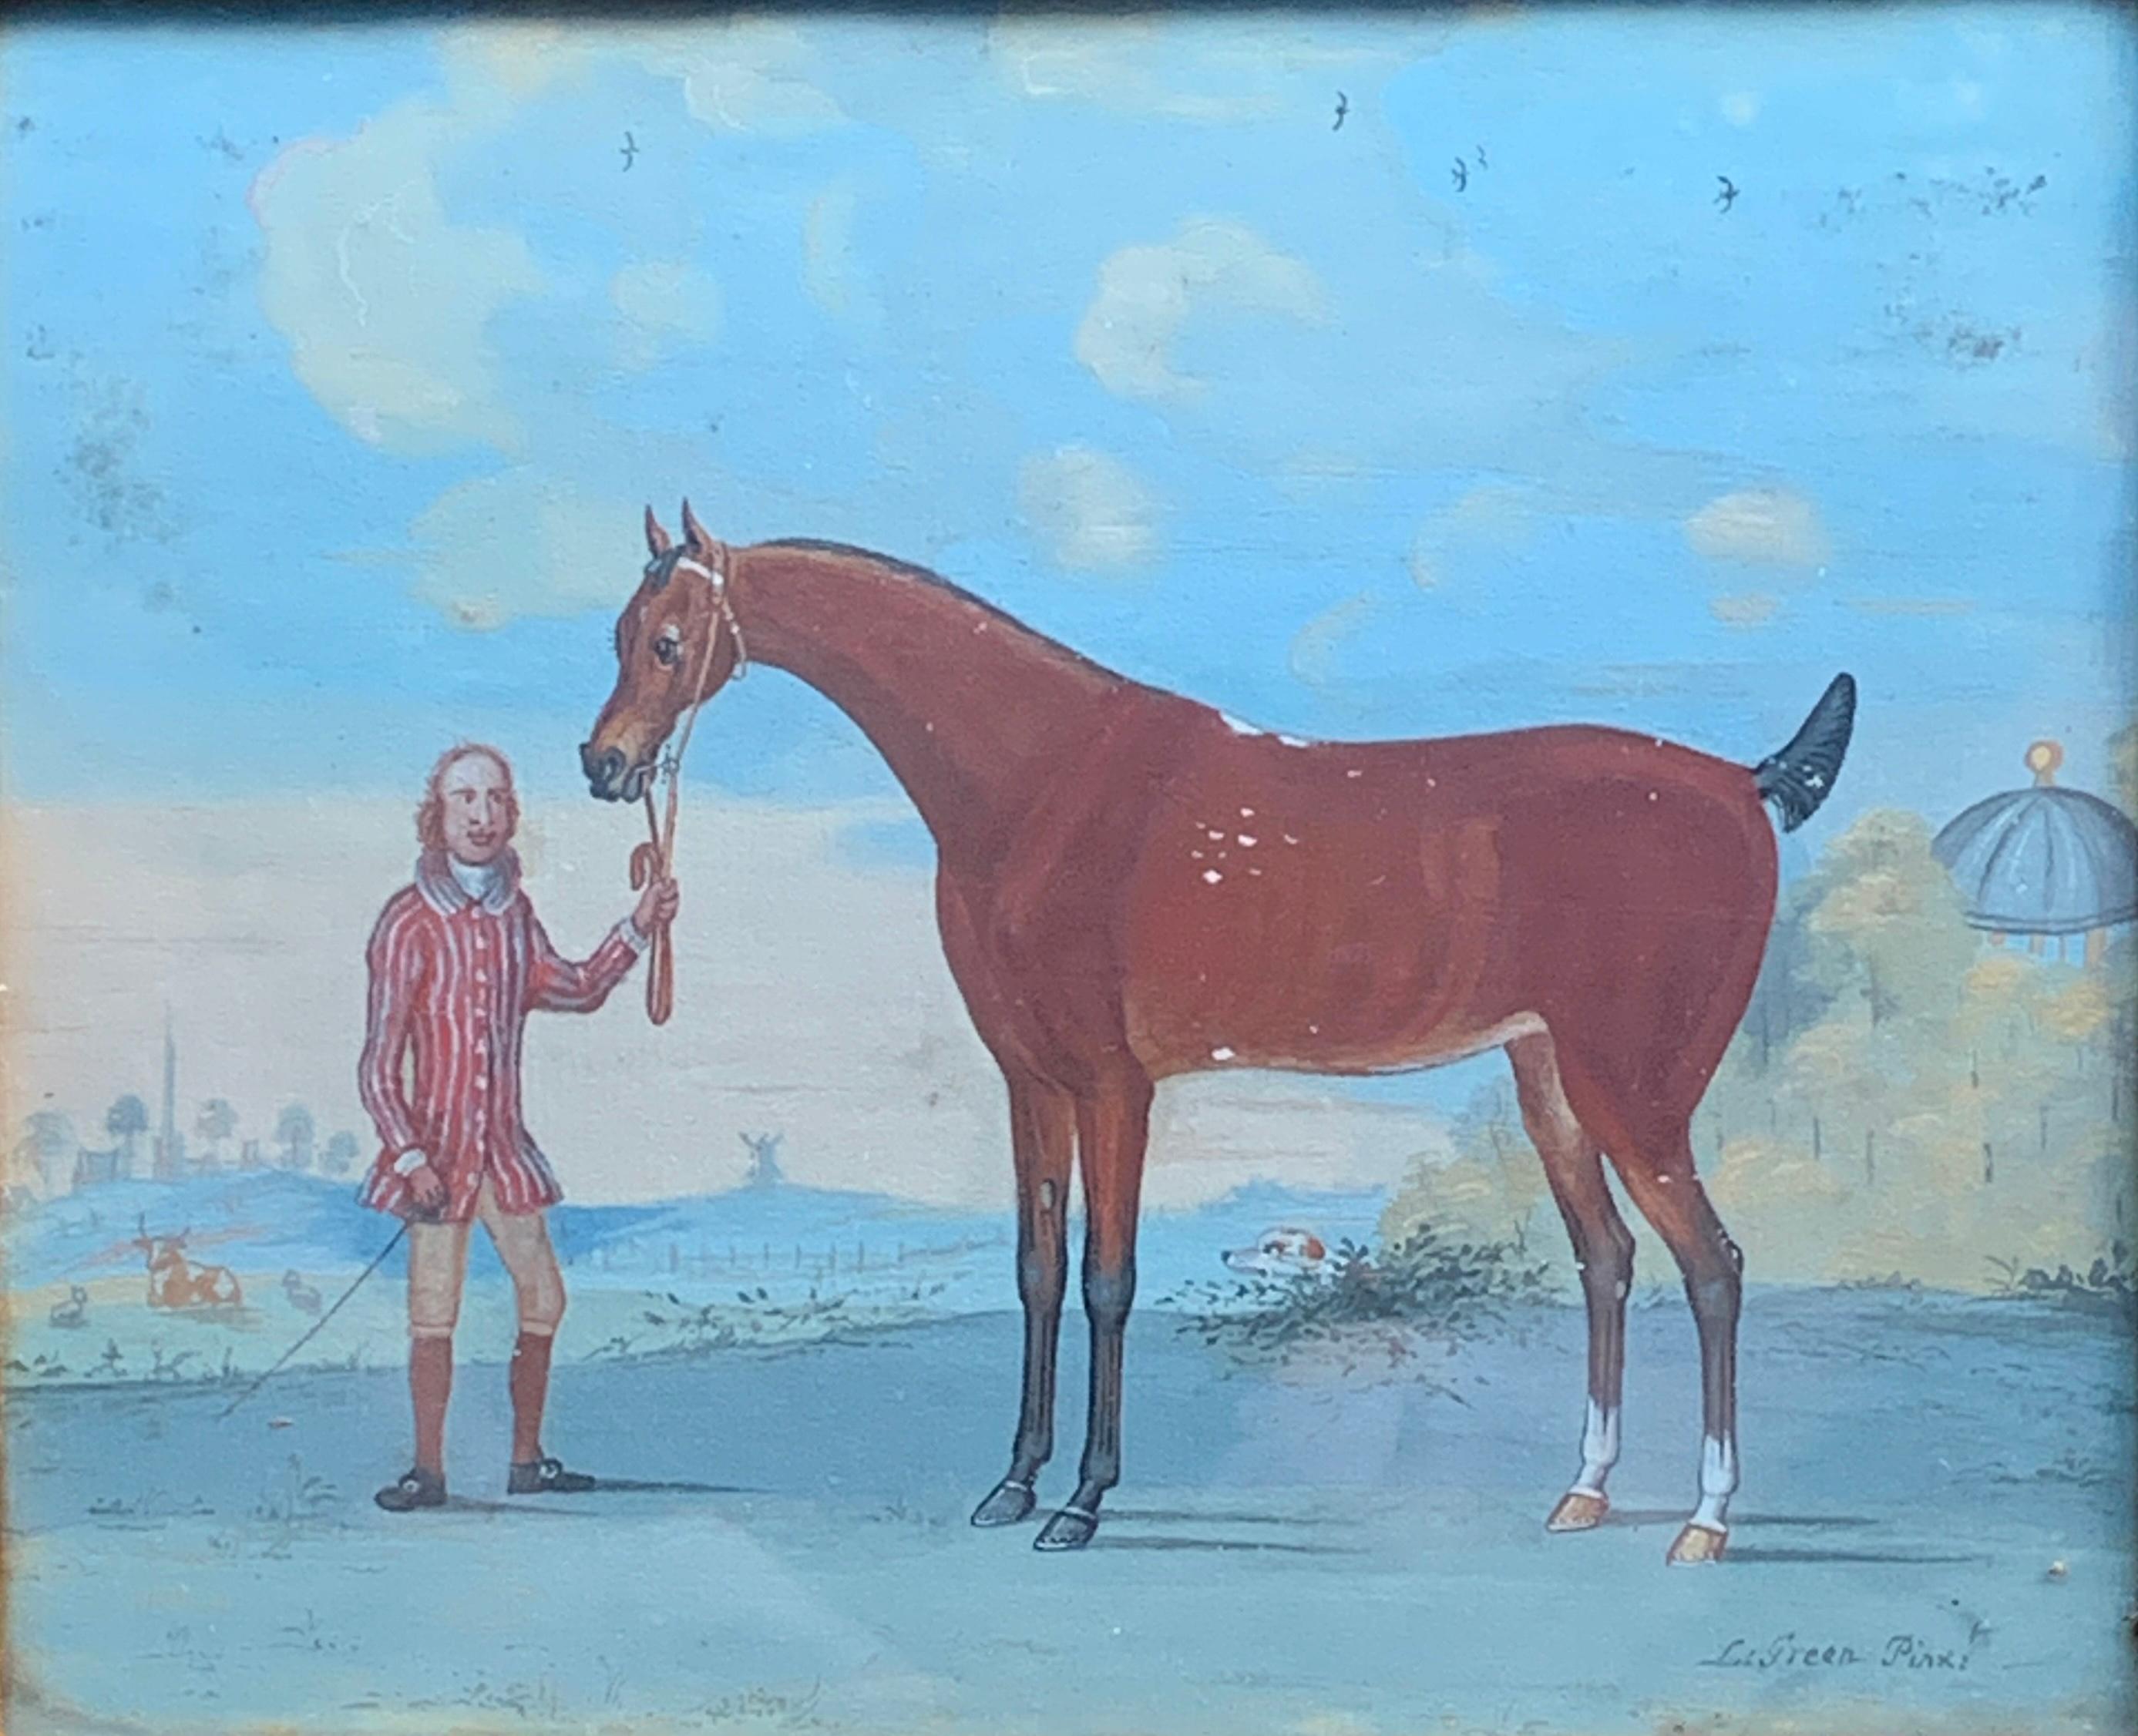 Scène anglaise du 18e siècle représentant un ébéniste avec un cheval dans un paysage - Painting de L.Green